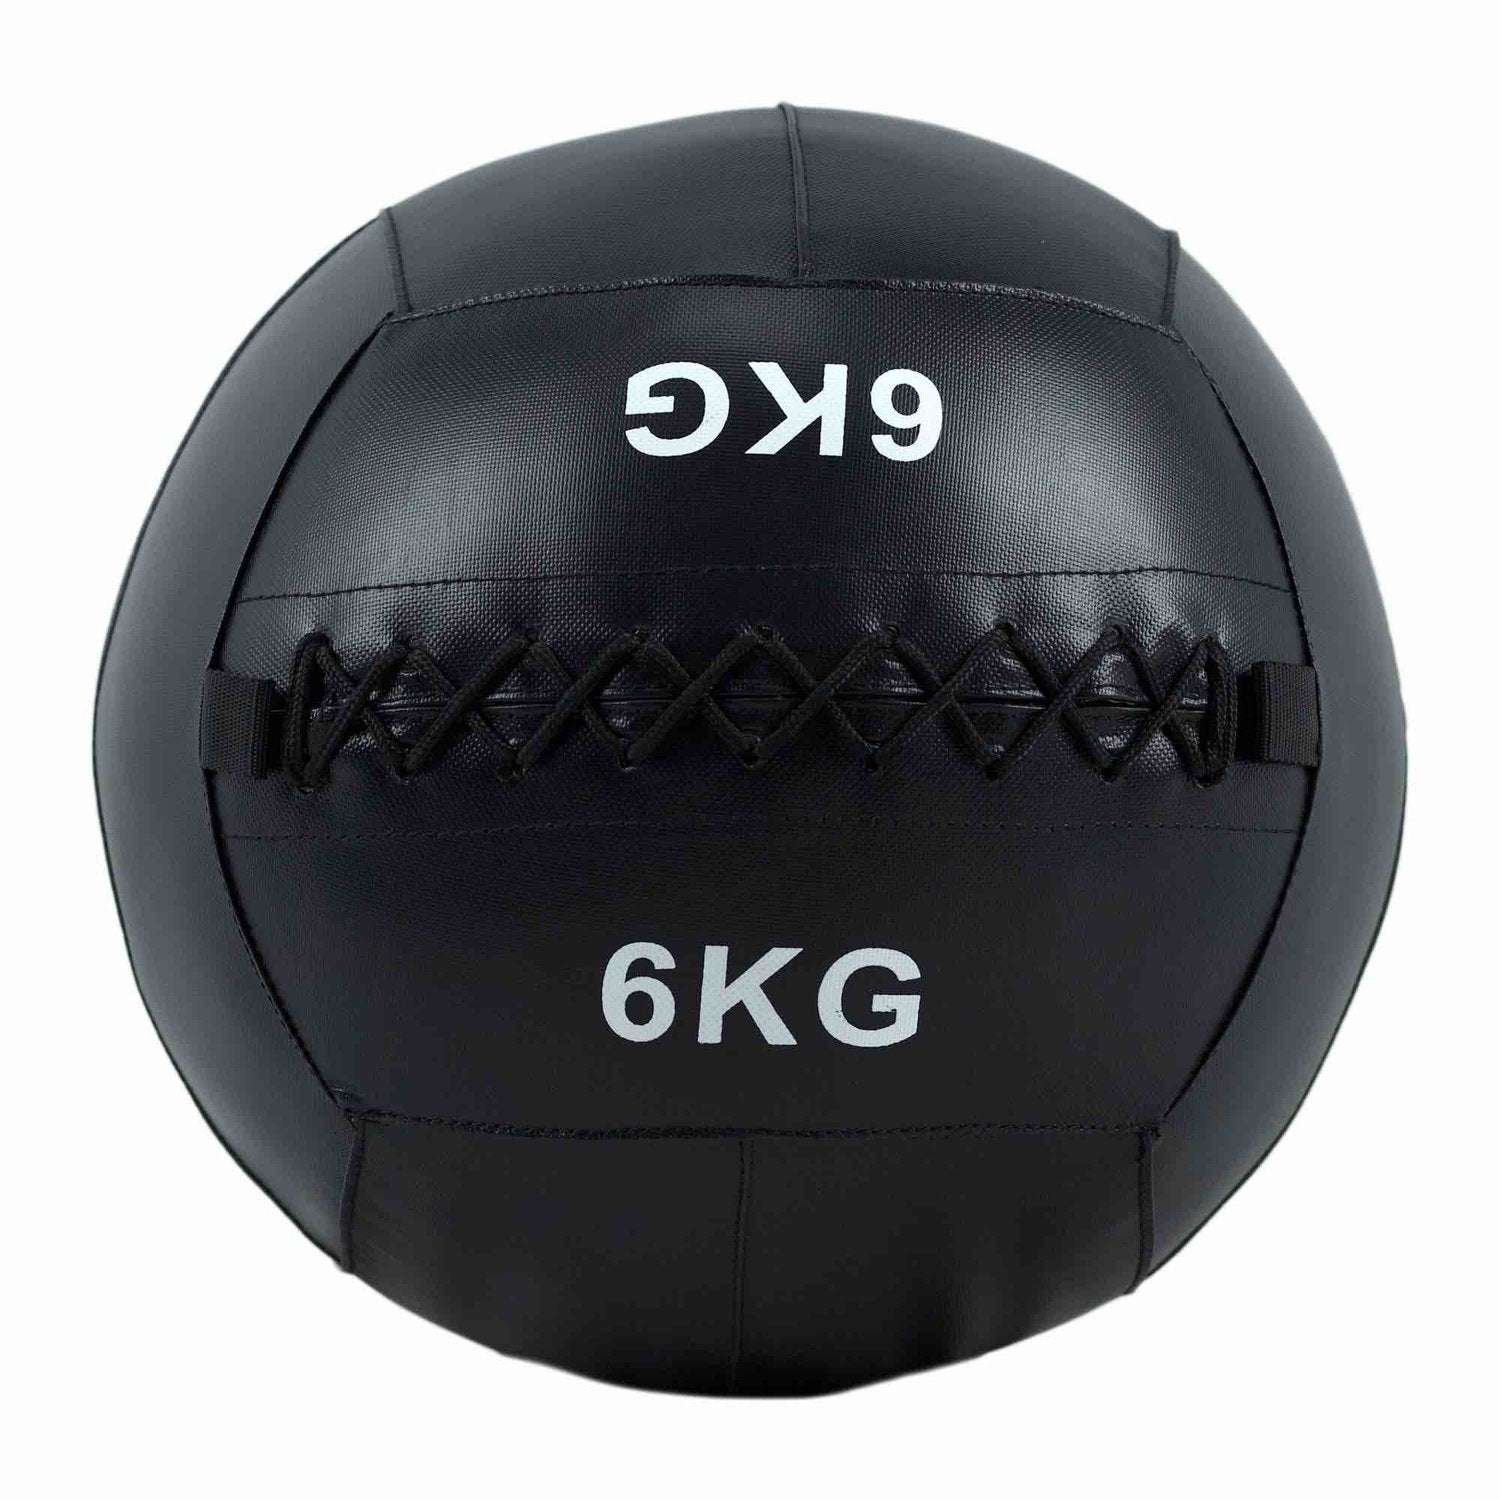 HighPowered Wallball (Medizinball) 6 kg kaufen bei HighPowered.ch